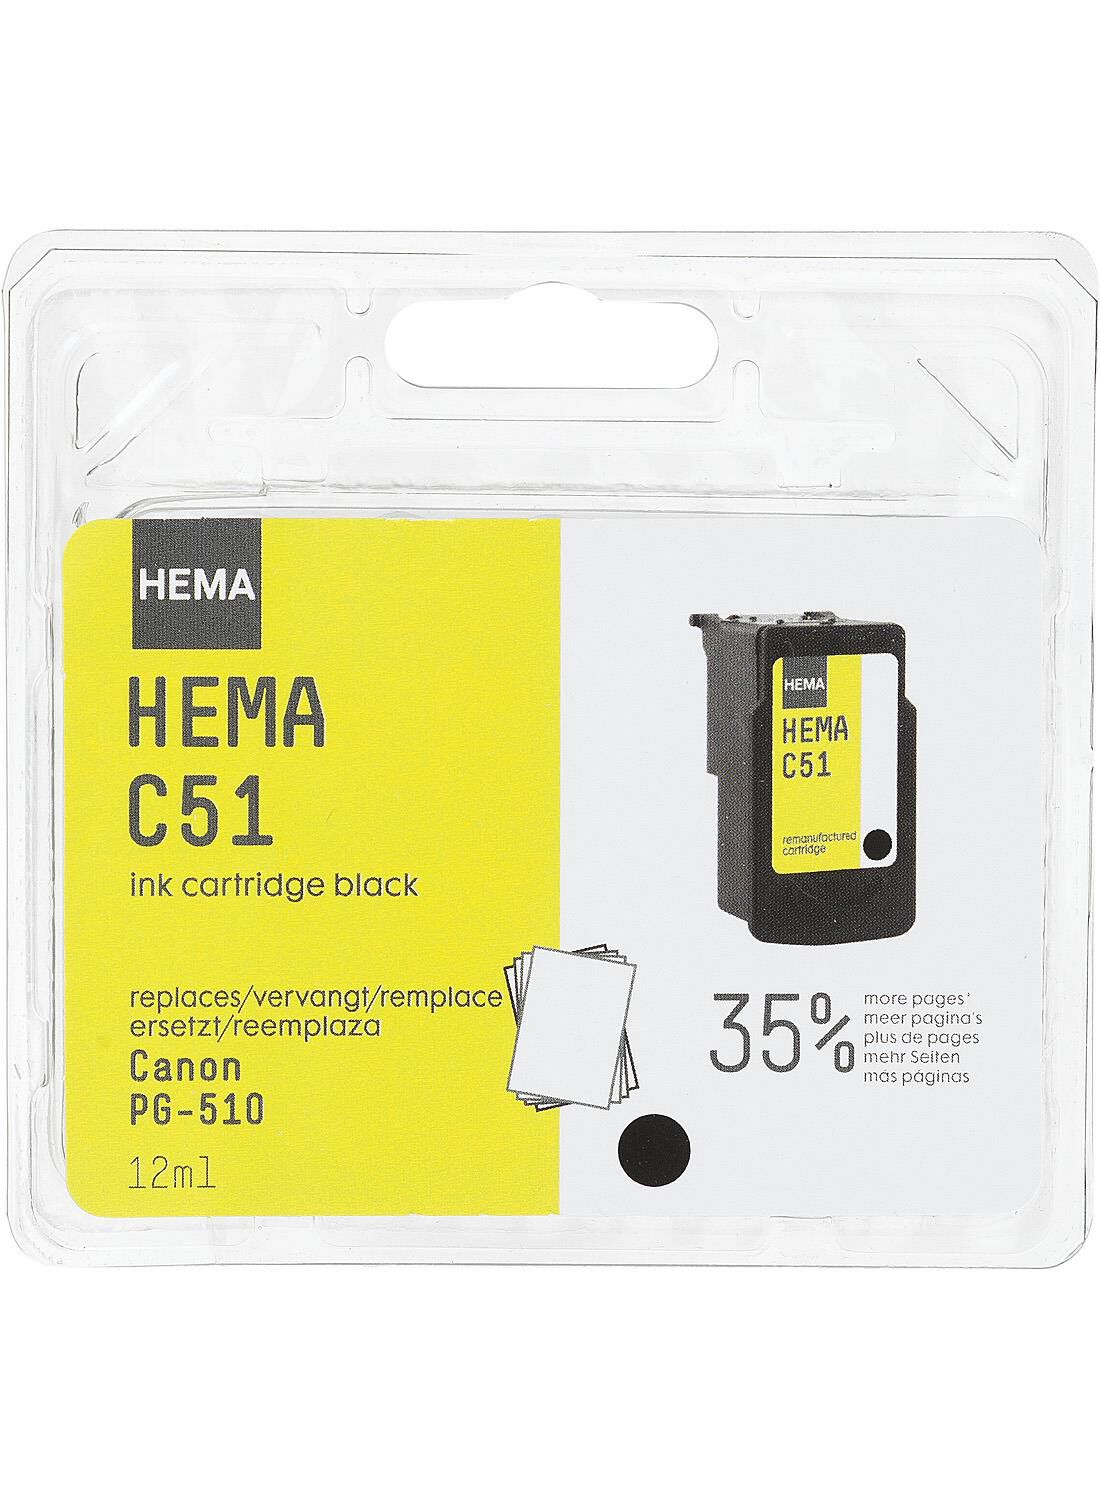 HEMA cartridge C51 voor de Canon PG-510 - HEMA